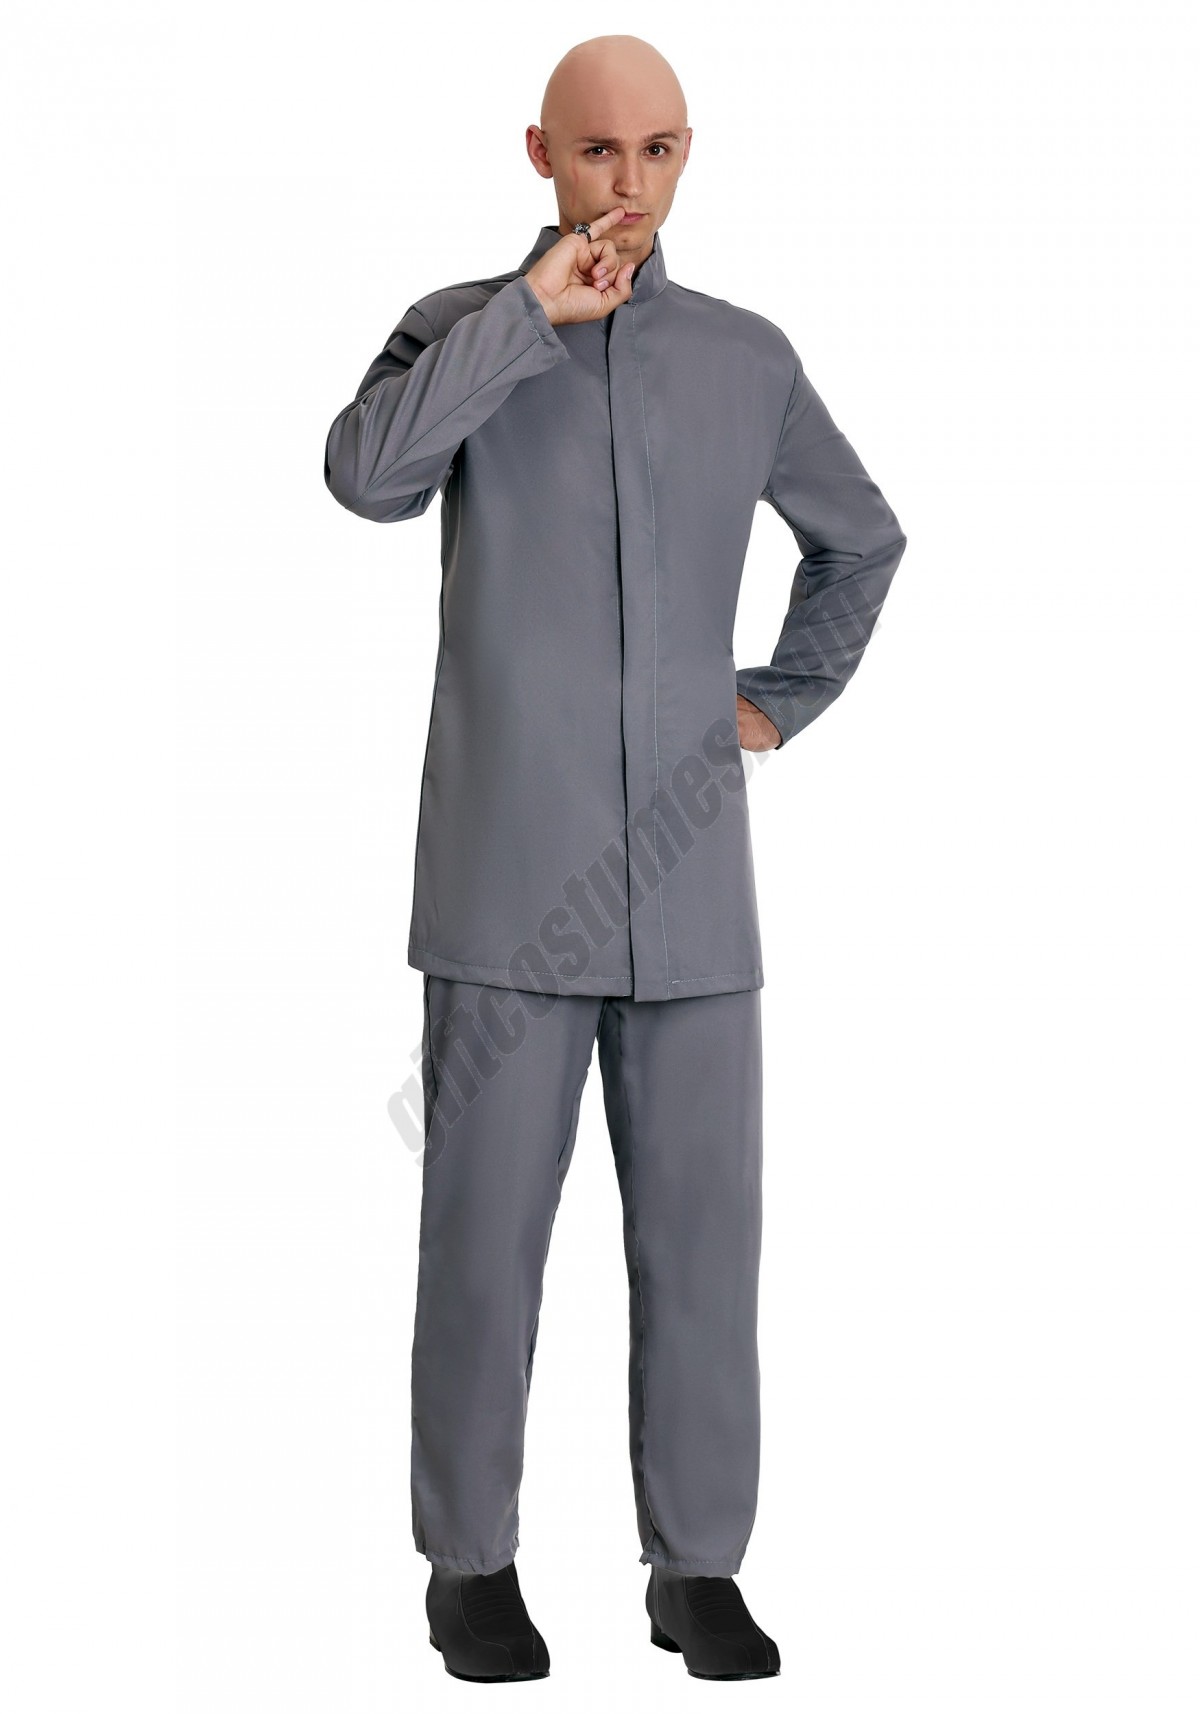 Deluxe Adult Gray Suit Costume - Men's - -0